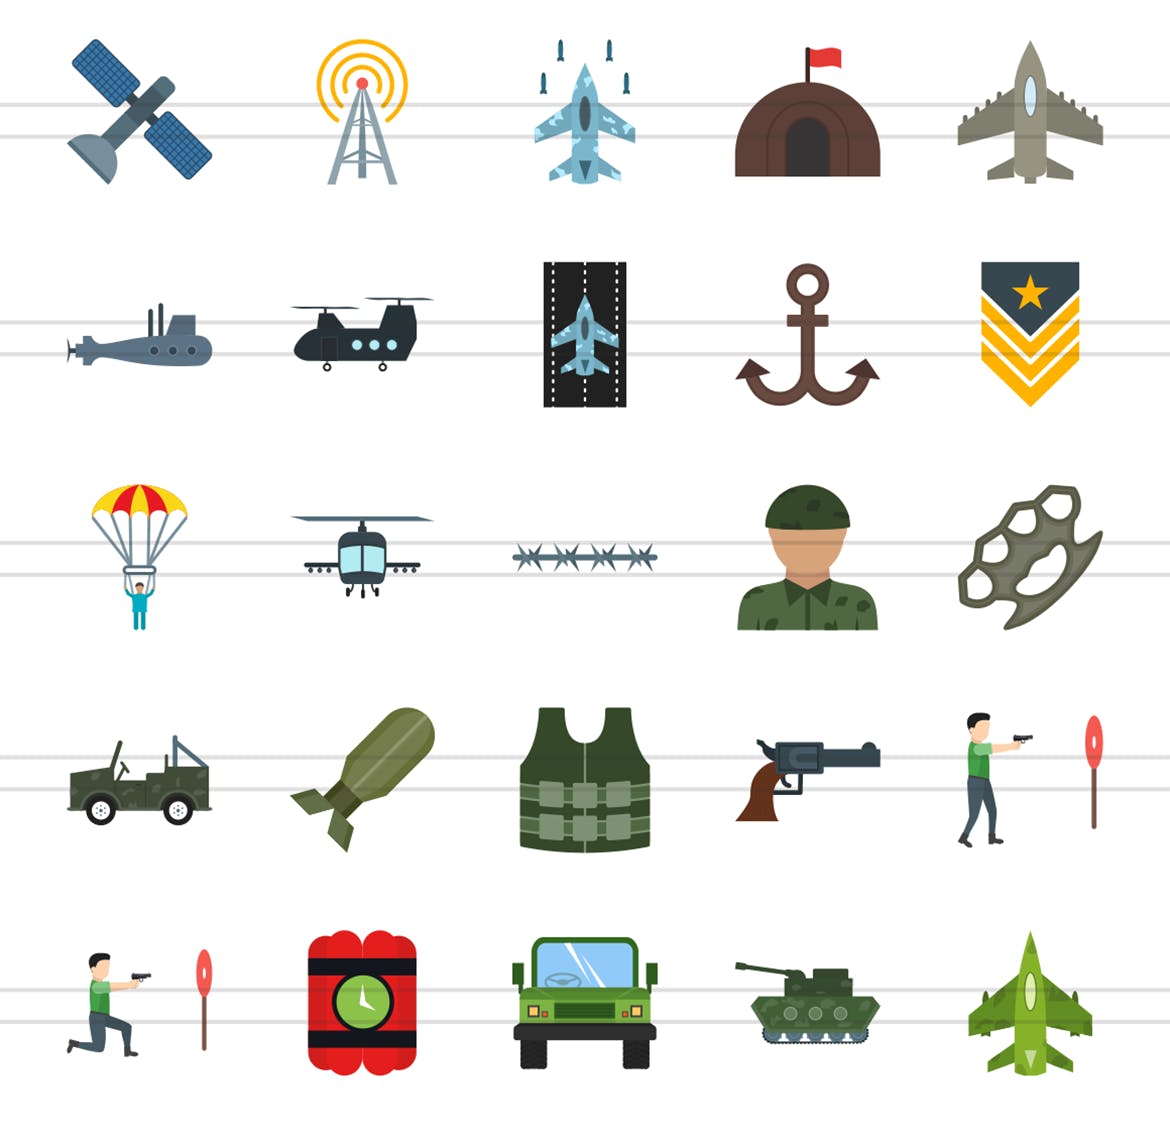 50枚军队装备主题扁平化多彩矢量蚂蚁素材精选图标 II 50 Military Flat Multicolor Icons Season II插图(2)